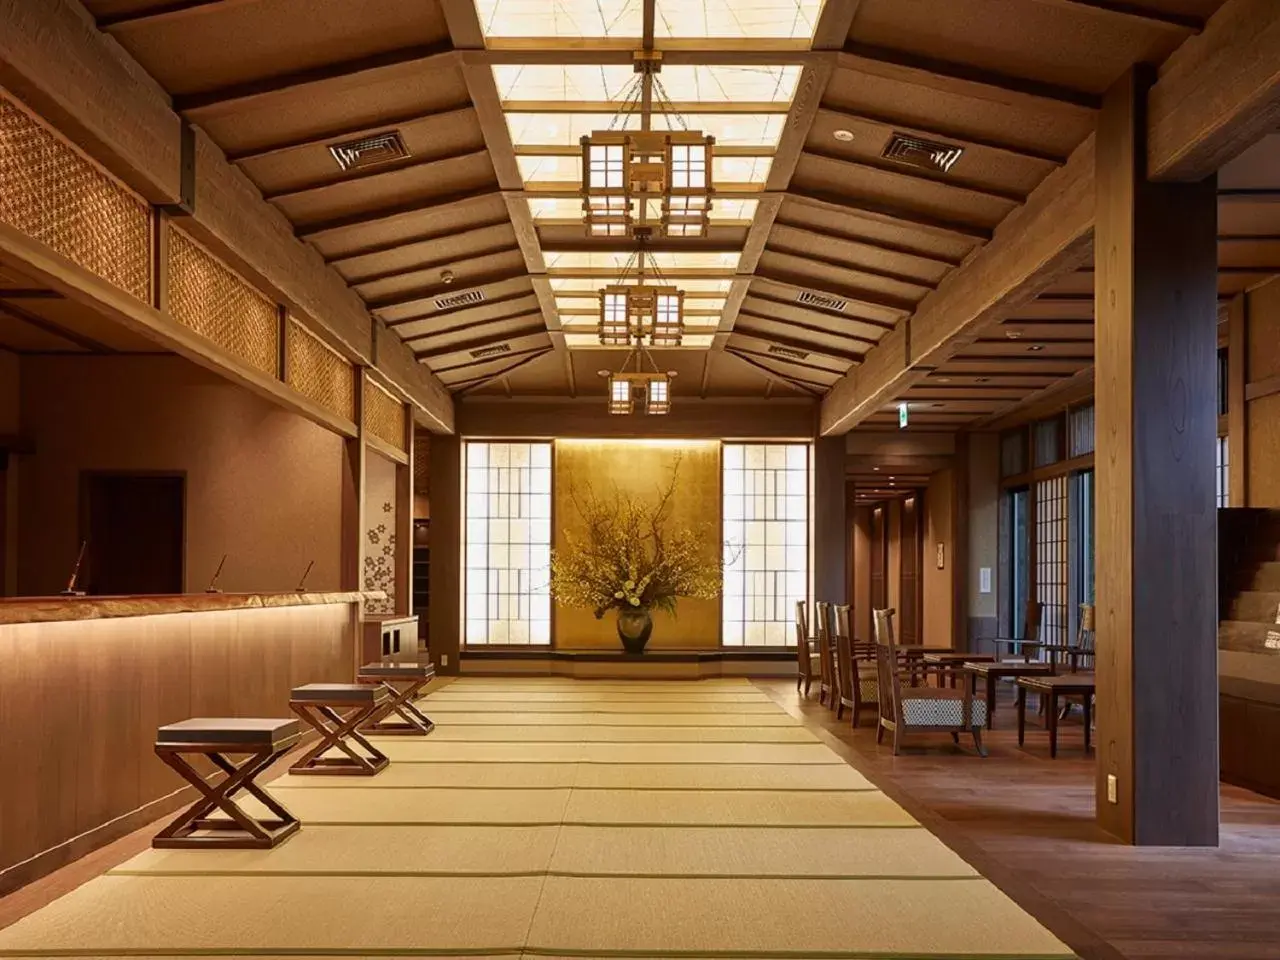 Lobby or reception in Yukinohana